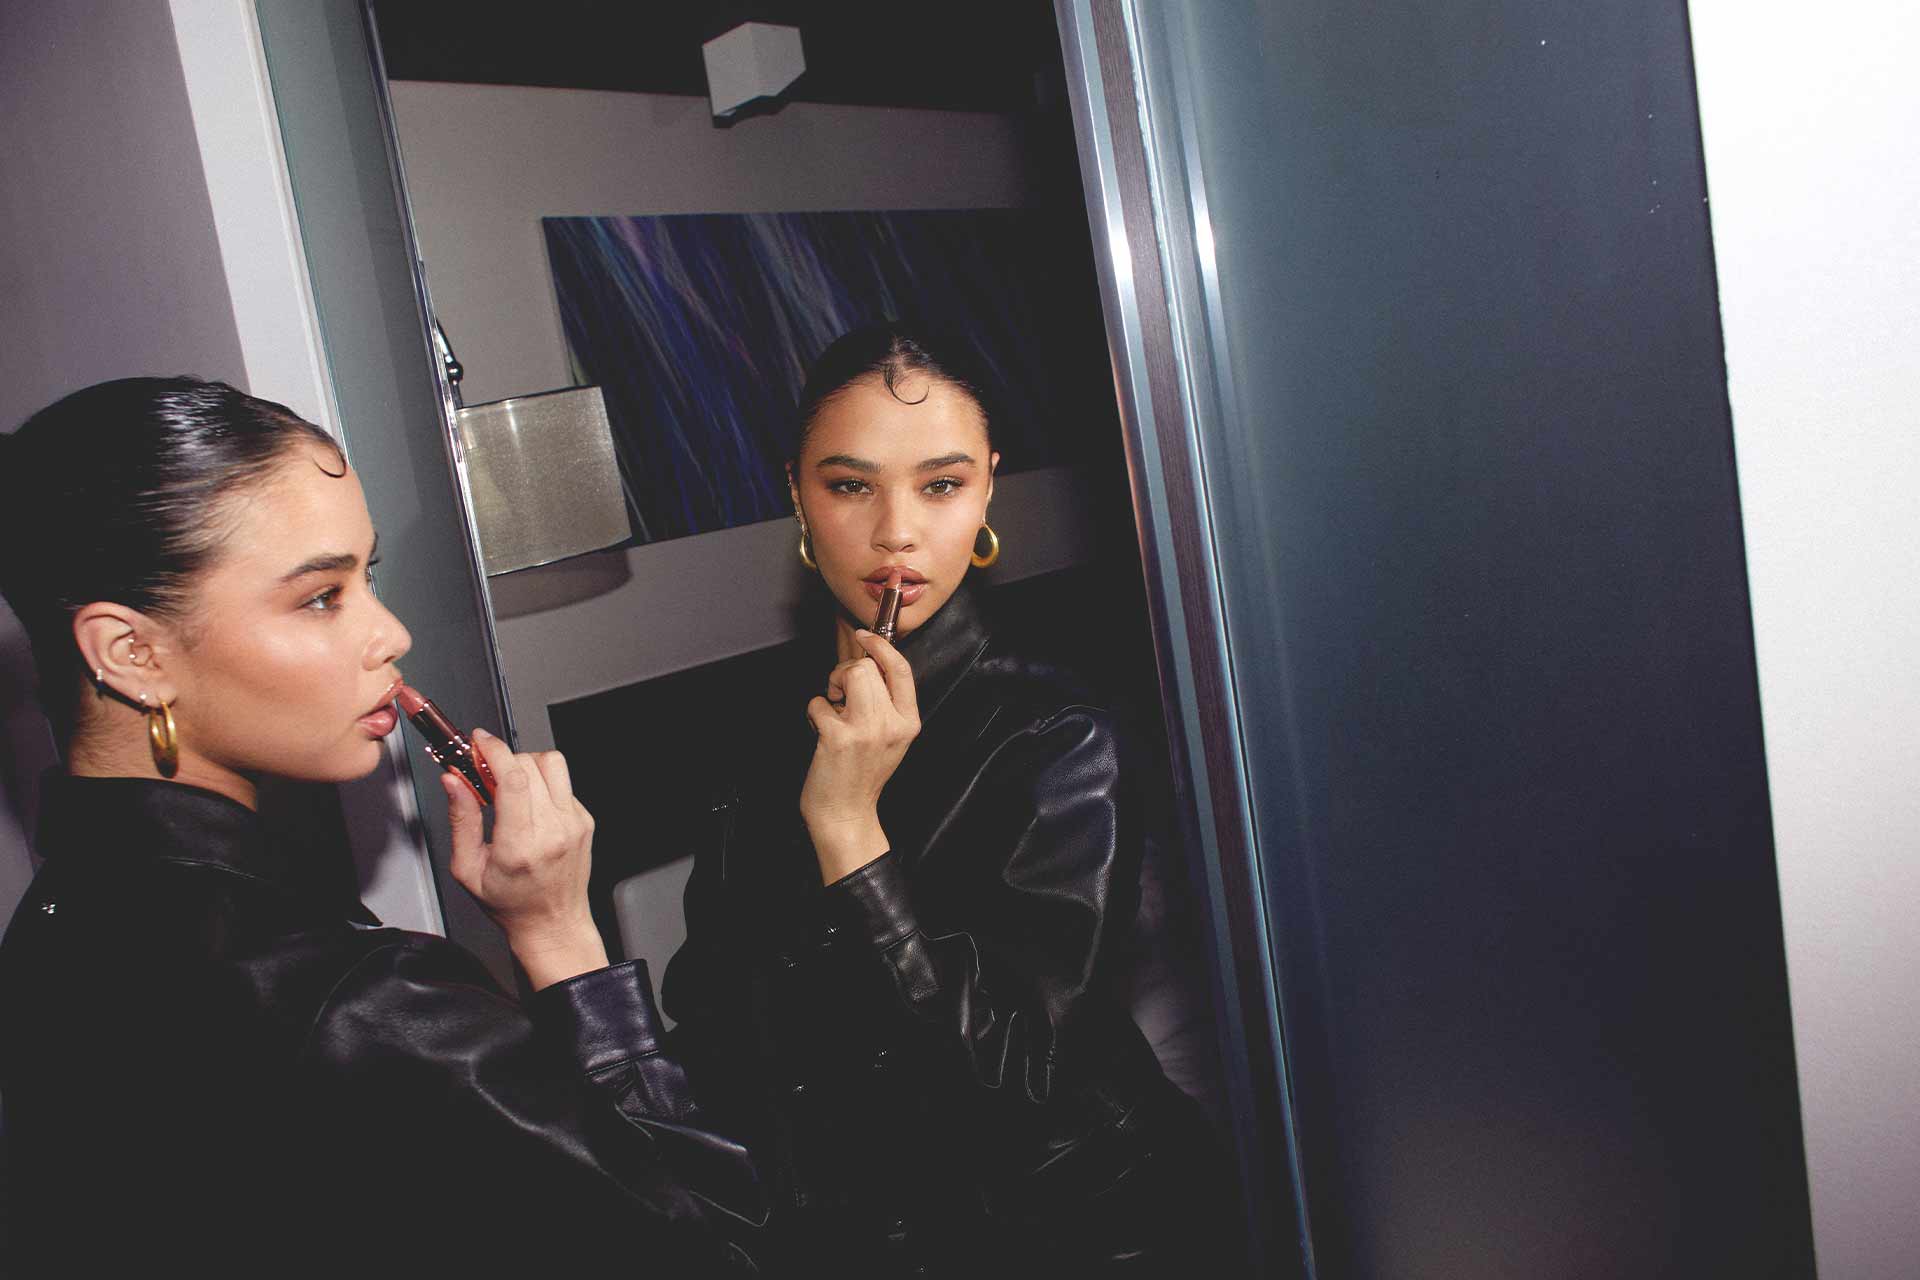 Edie Rose applying lipstick in mirror